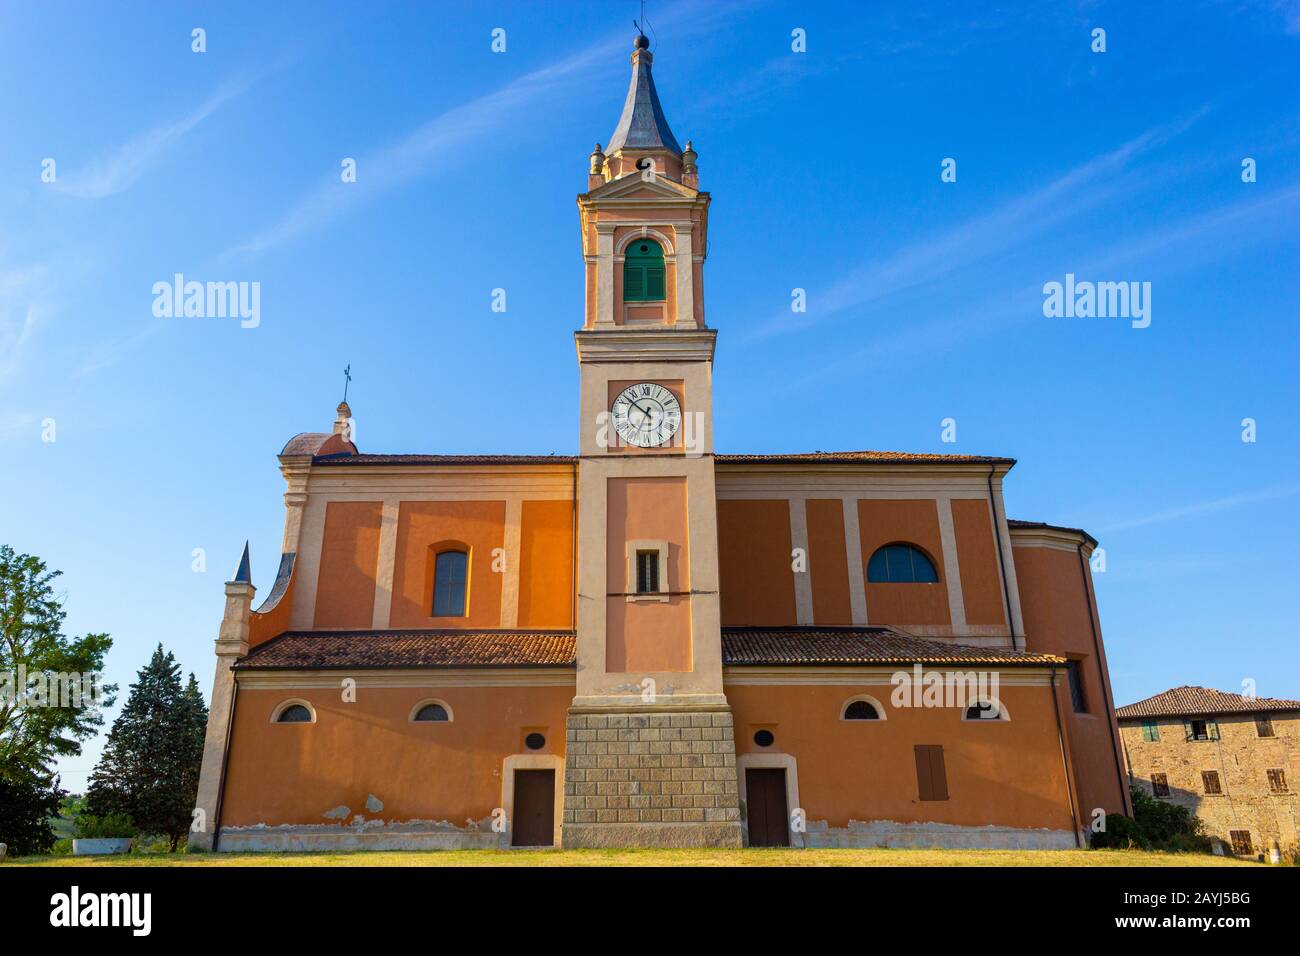 The church of St. Apollinar in Castello di Serravalle, Valsamoggia, Emilia Romagna, Italy, in a sunny day Stock Photo